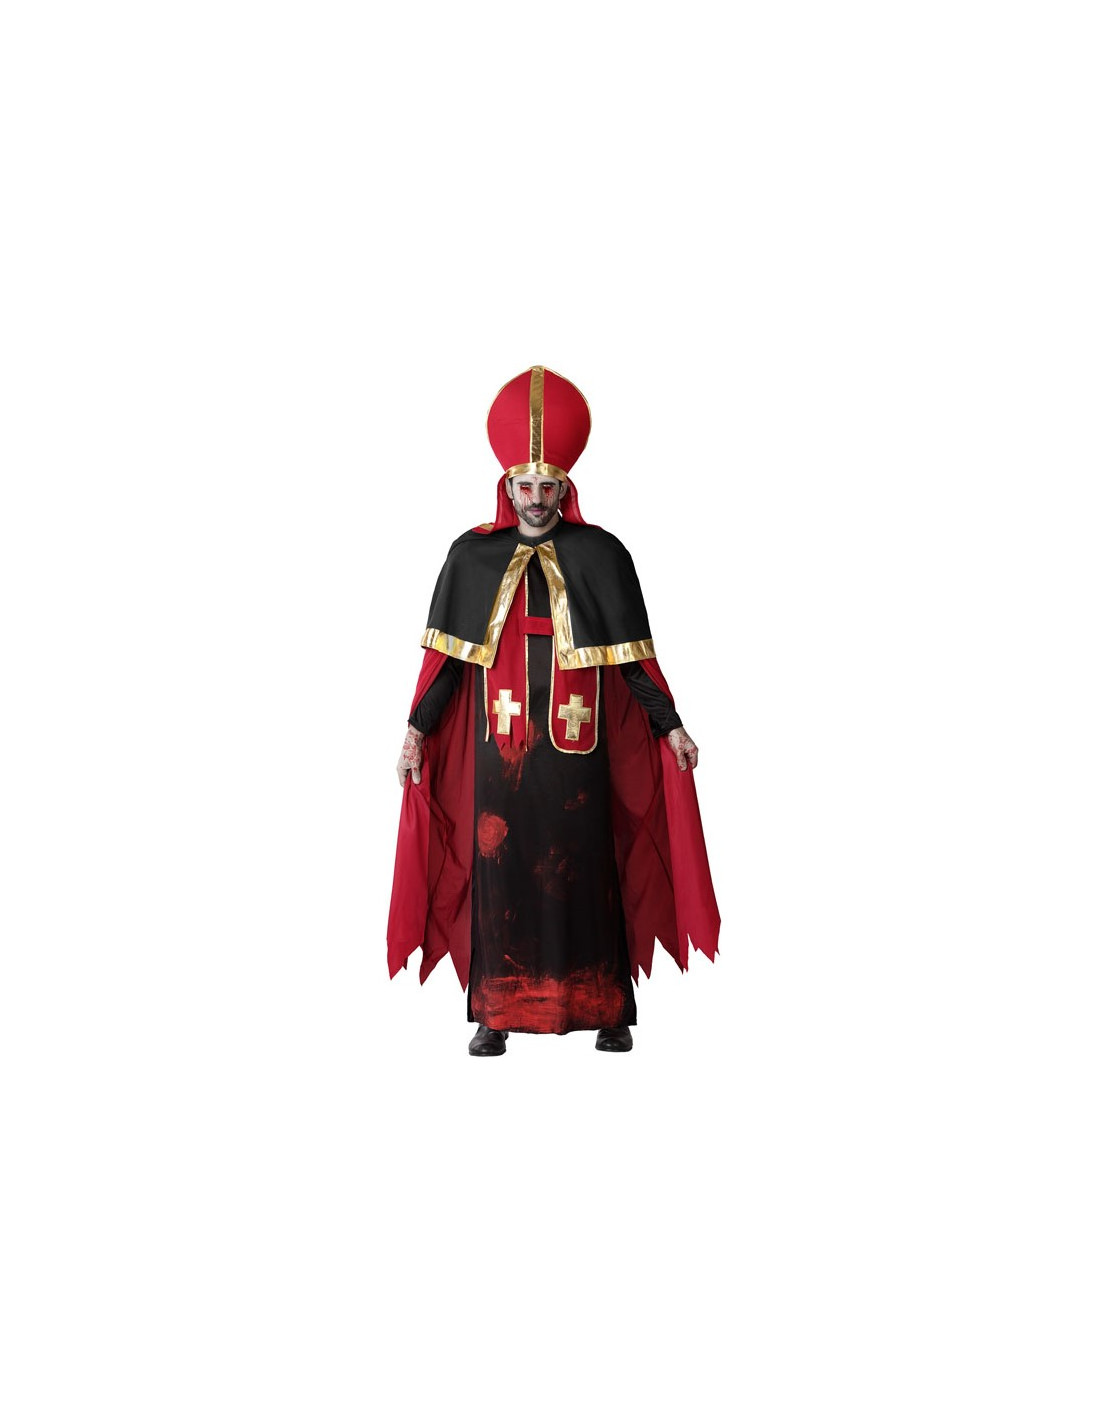 Disfraz Cardenal Papa Sacerdote Hombre Clérigo【Tallas Adulto S a L】【Túnica y Bonete】Disfraces Hombre Carnaval Profesiones 